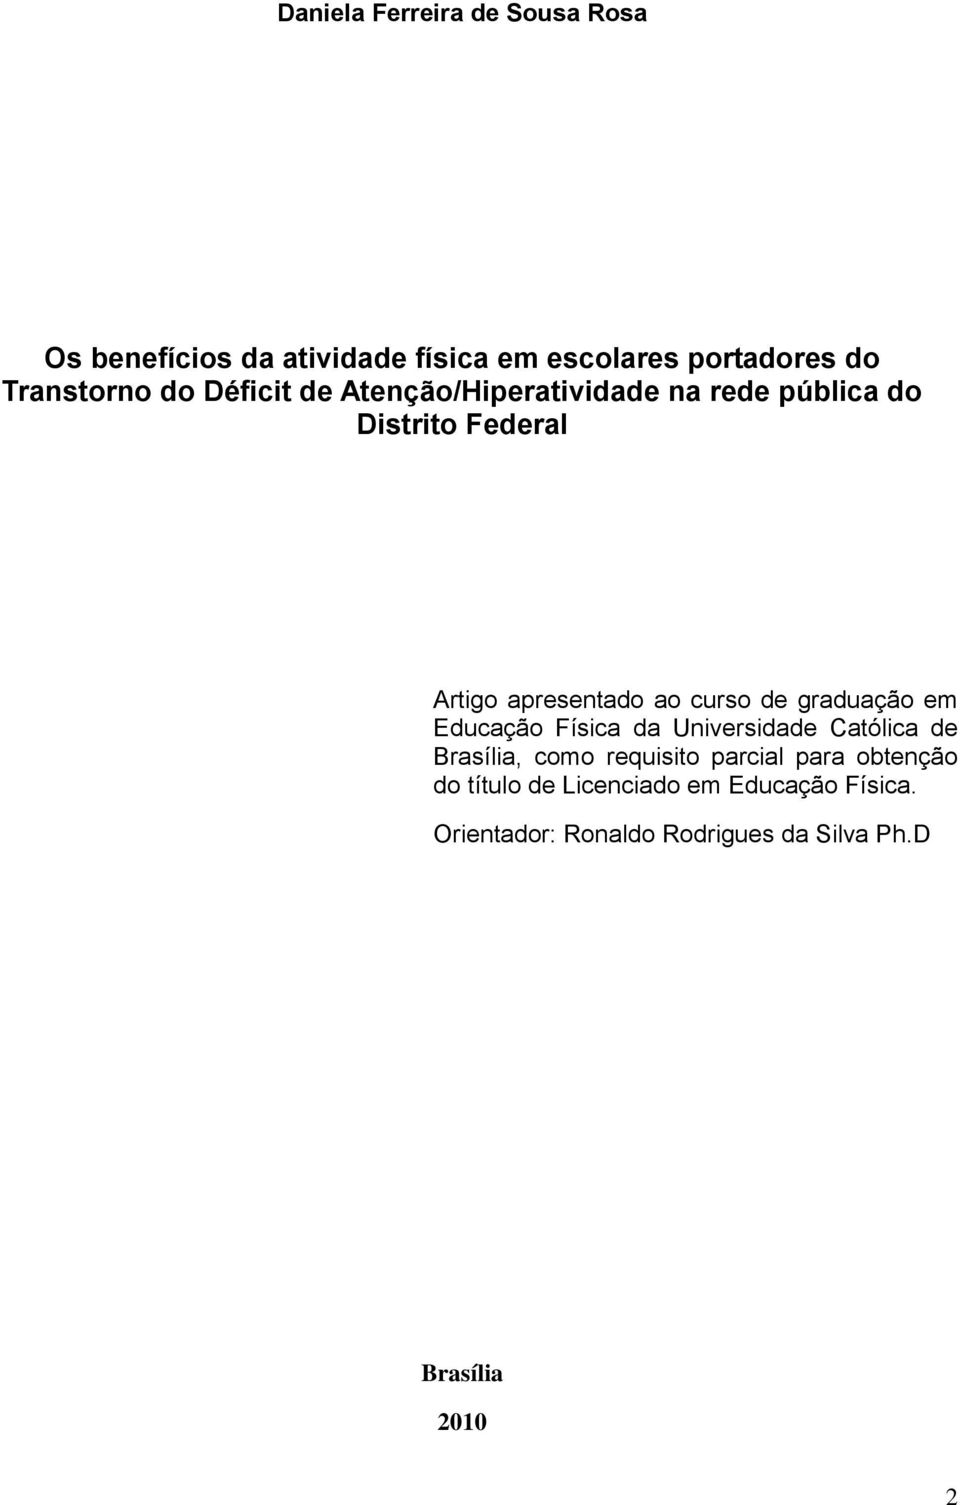 graduação em Educação Física da Universidade Católica de Brasília, como requisito parcial para obtenção